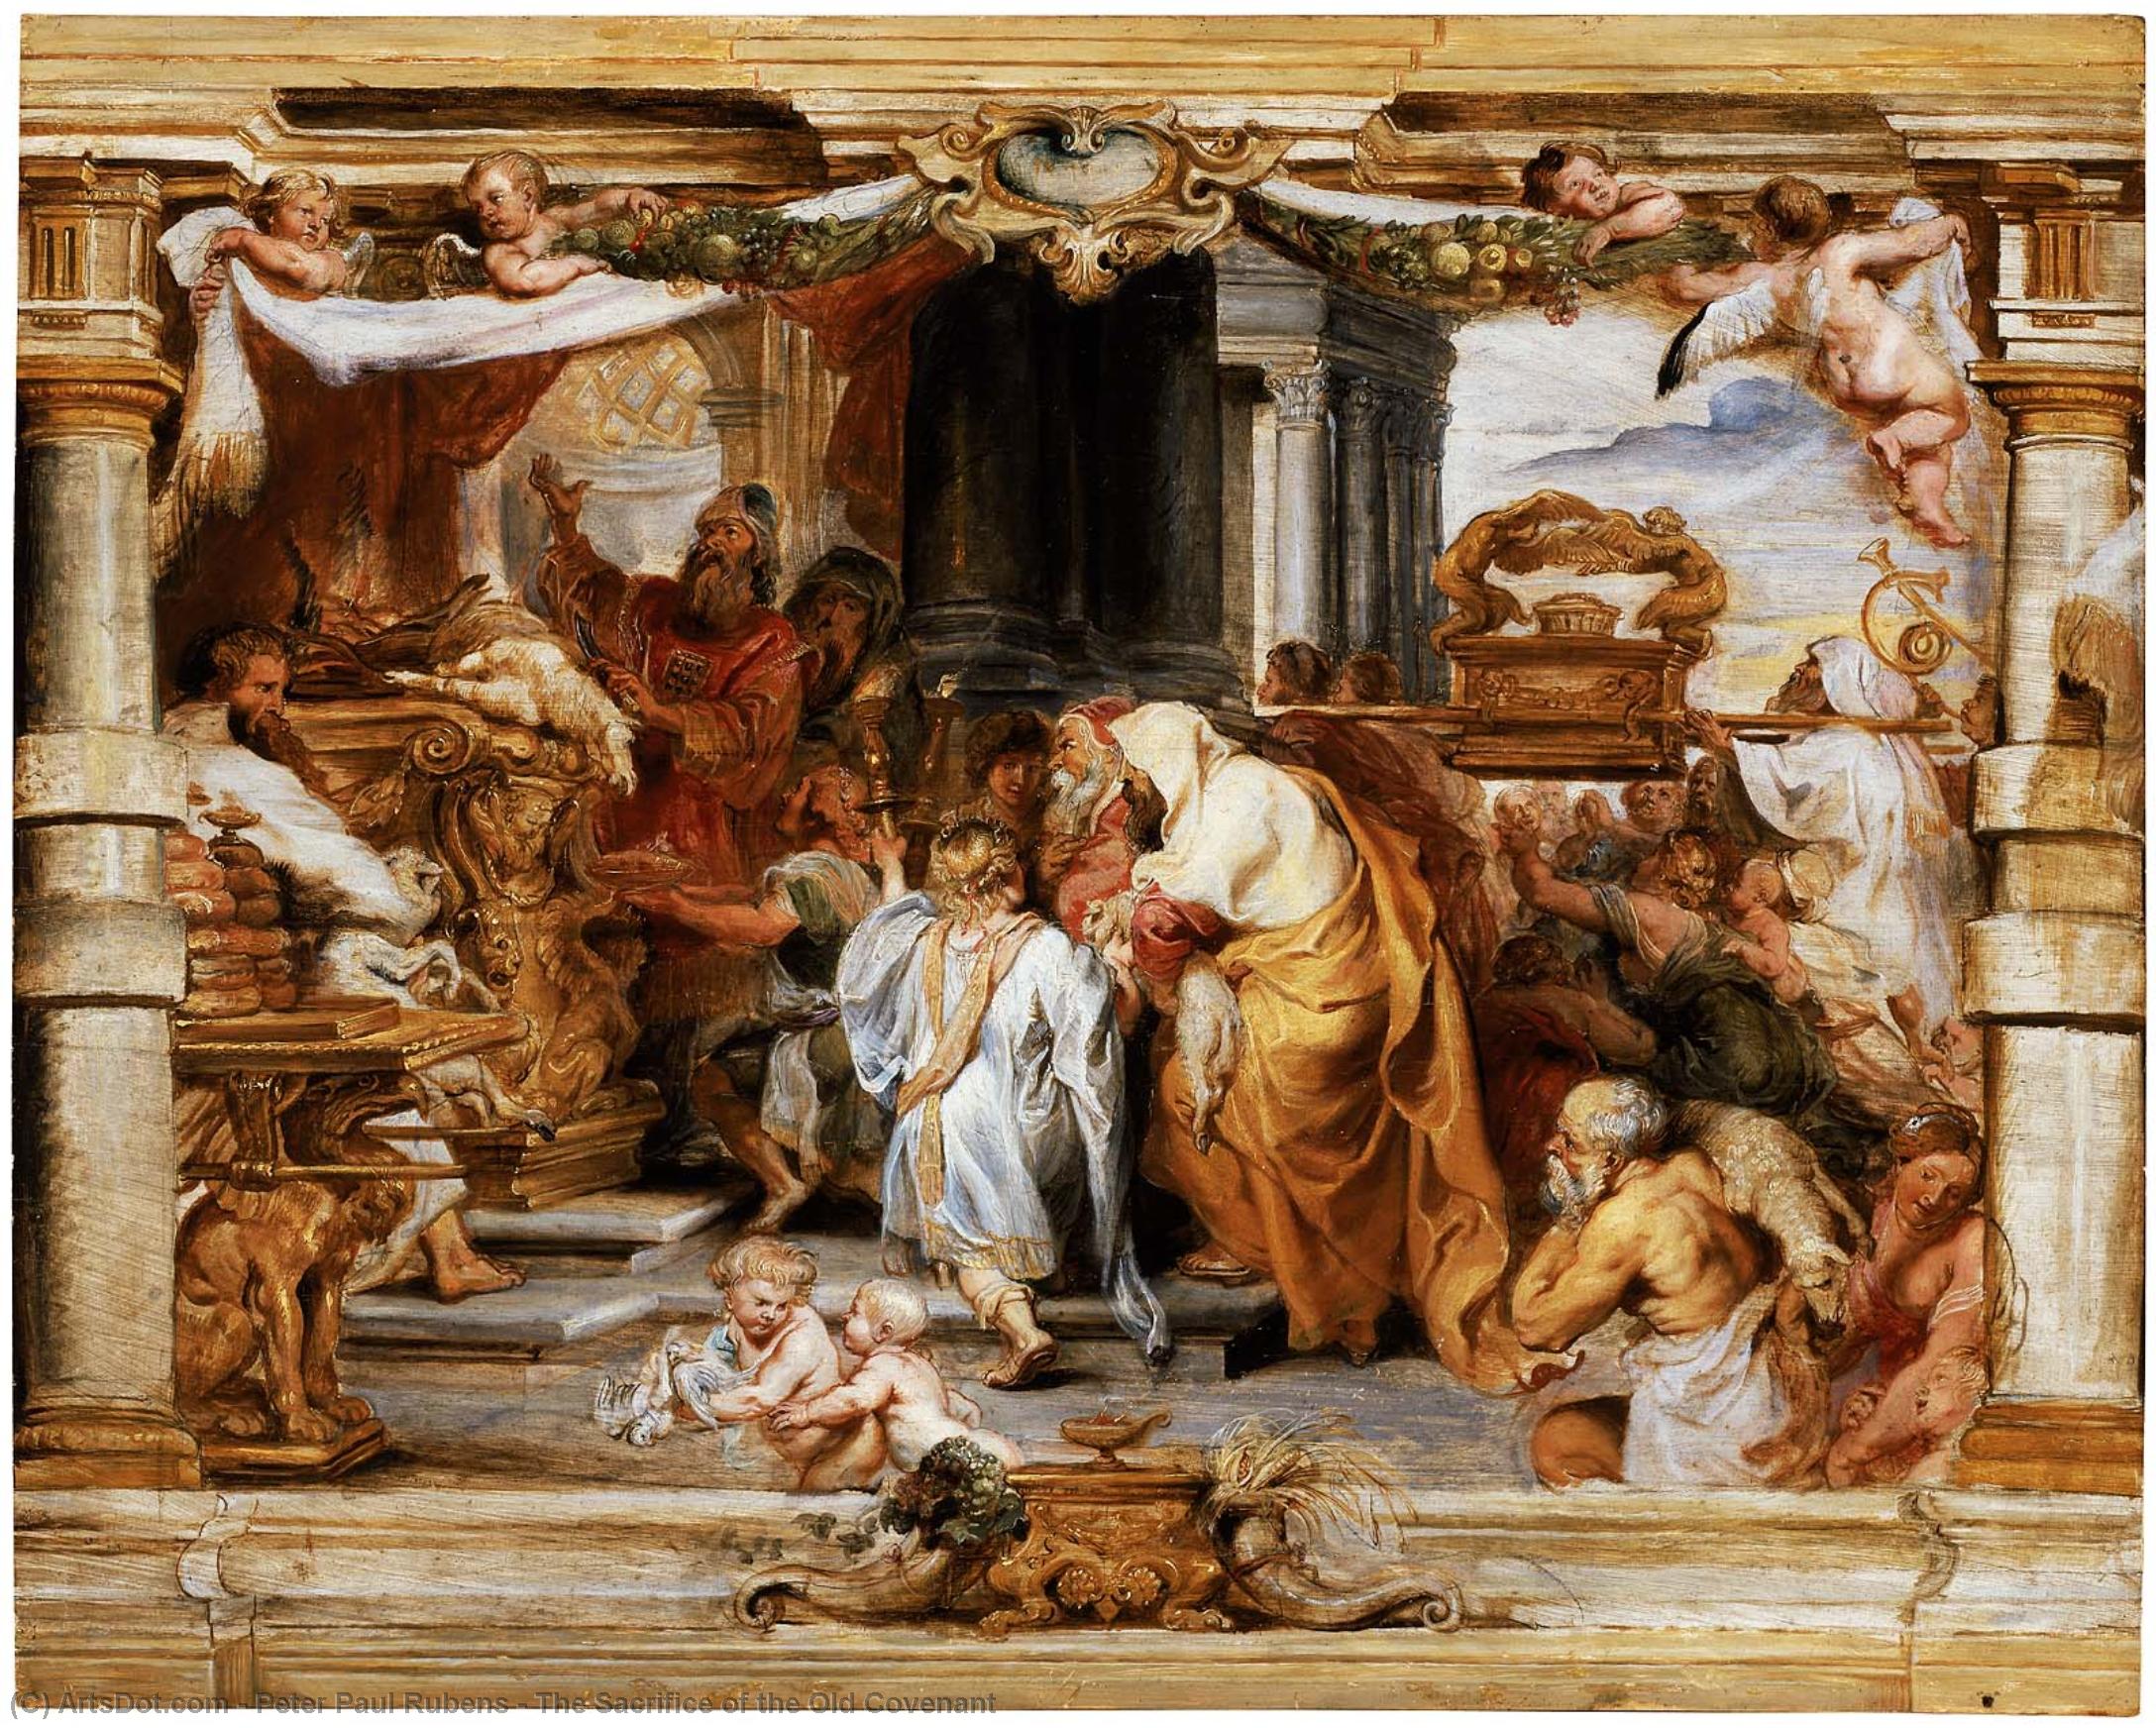 WikiOO.org - Enciclopedia of Fine Arts - Pictura, lucrări de artă Peter Paul Rubens - The Sacrifice of the Old Covenant